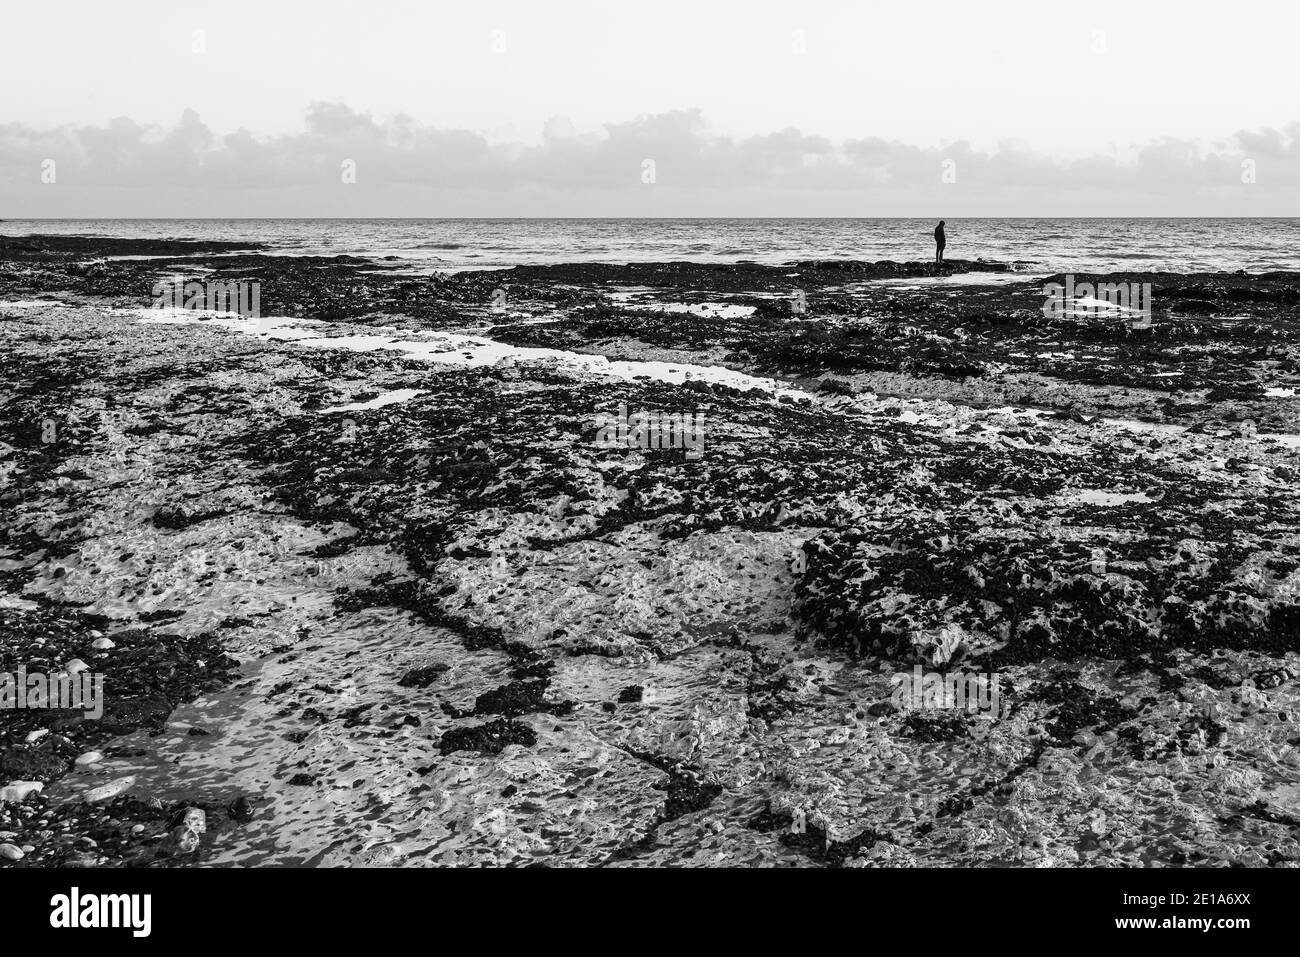 Image en noir et blanc d'une seule personne se tenant sur une plage de craie. Elle a un sentiment de solitude, et peut-être de tristesse ou de désespoir, avec la copie spac Banque D'Images